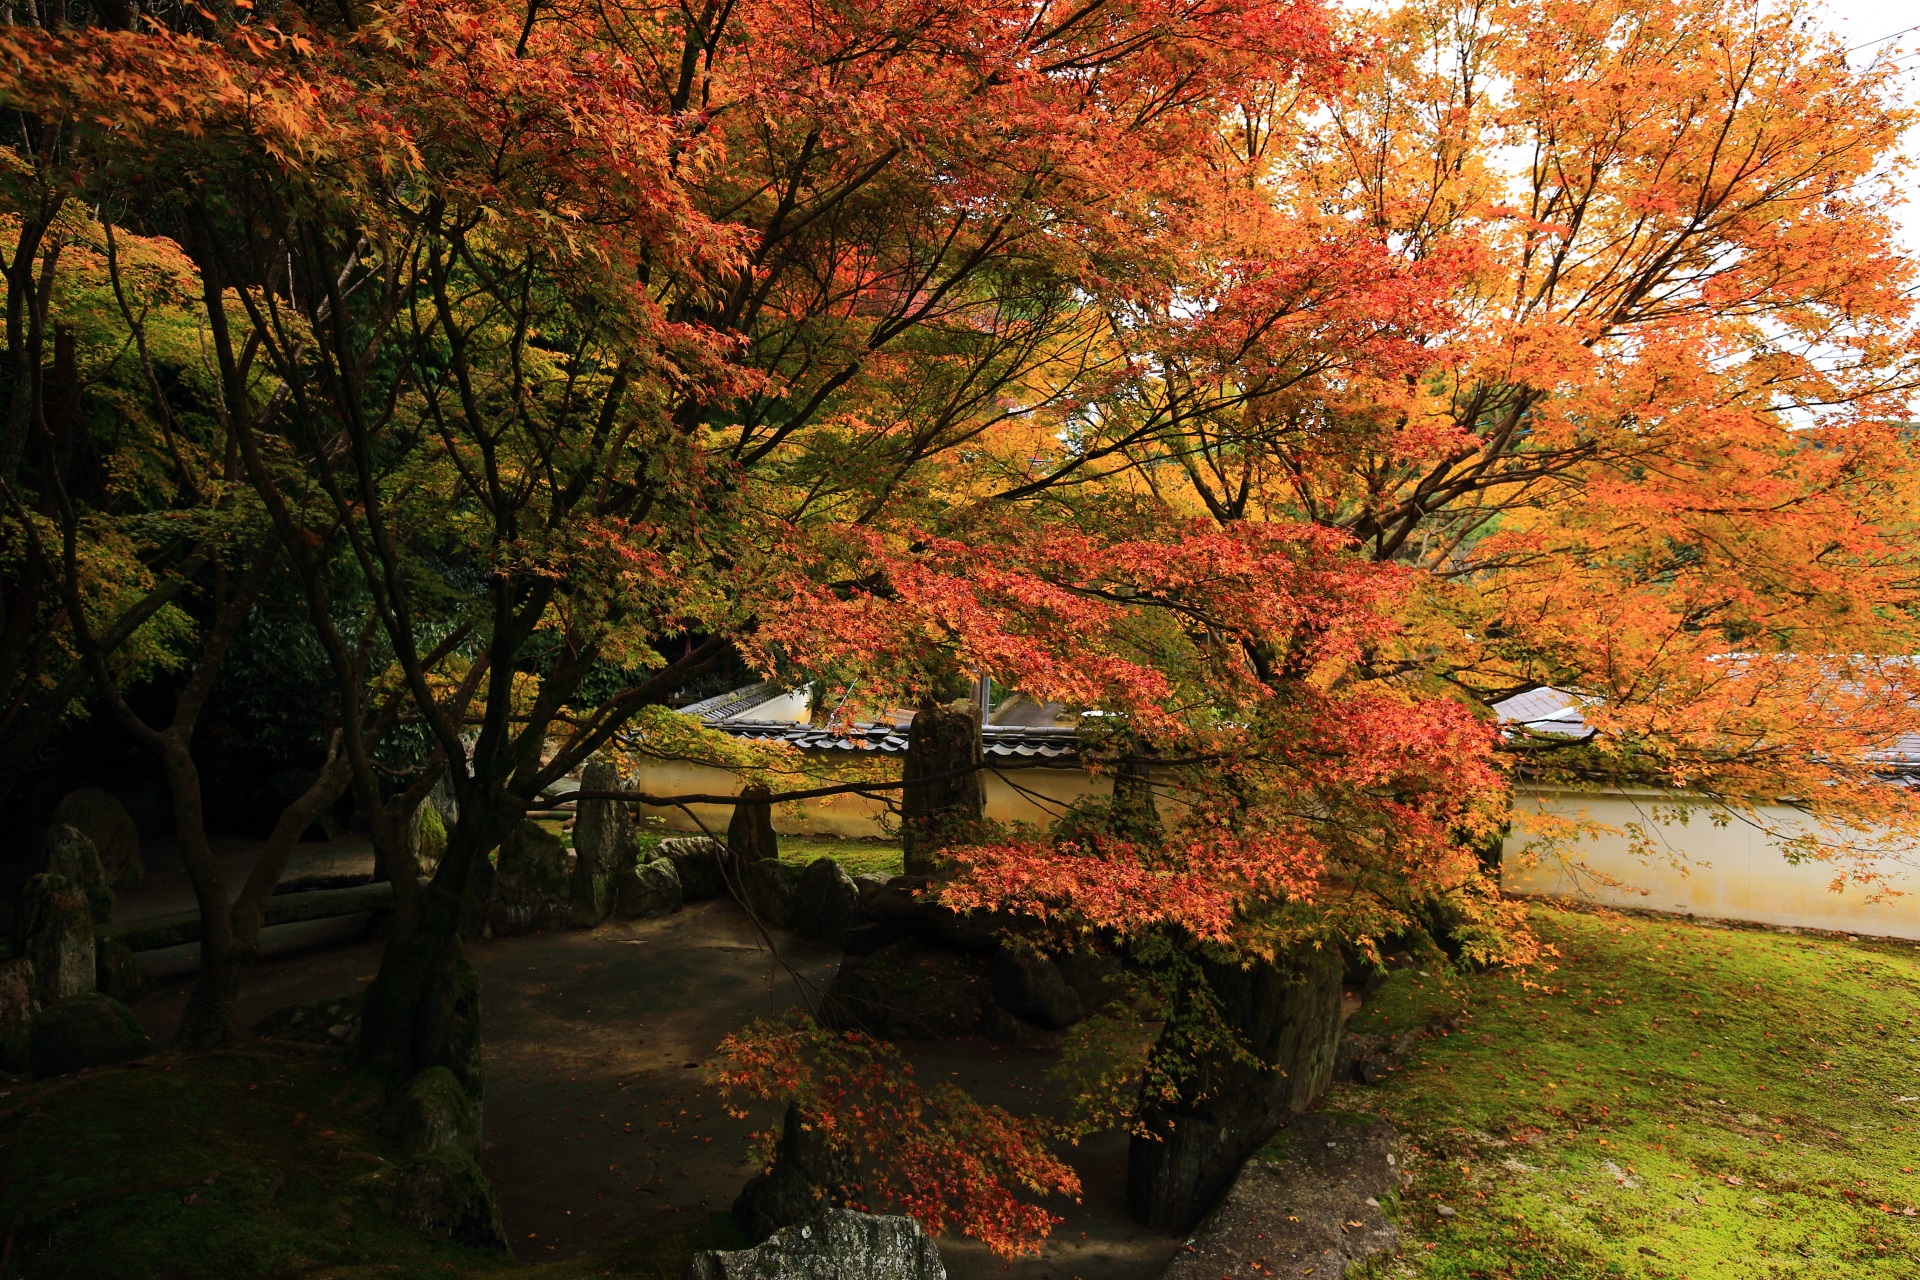 善能寺の祥空殿から眺めた紅葉と池泉式の庭園